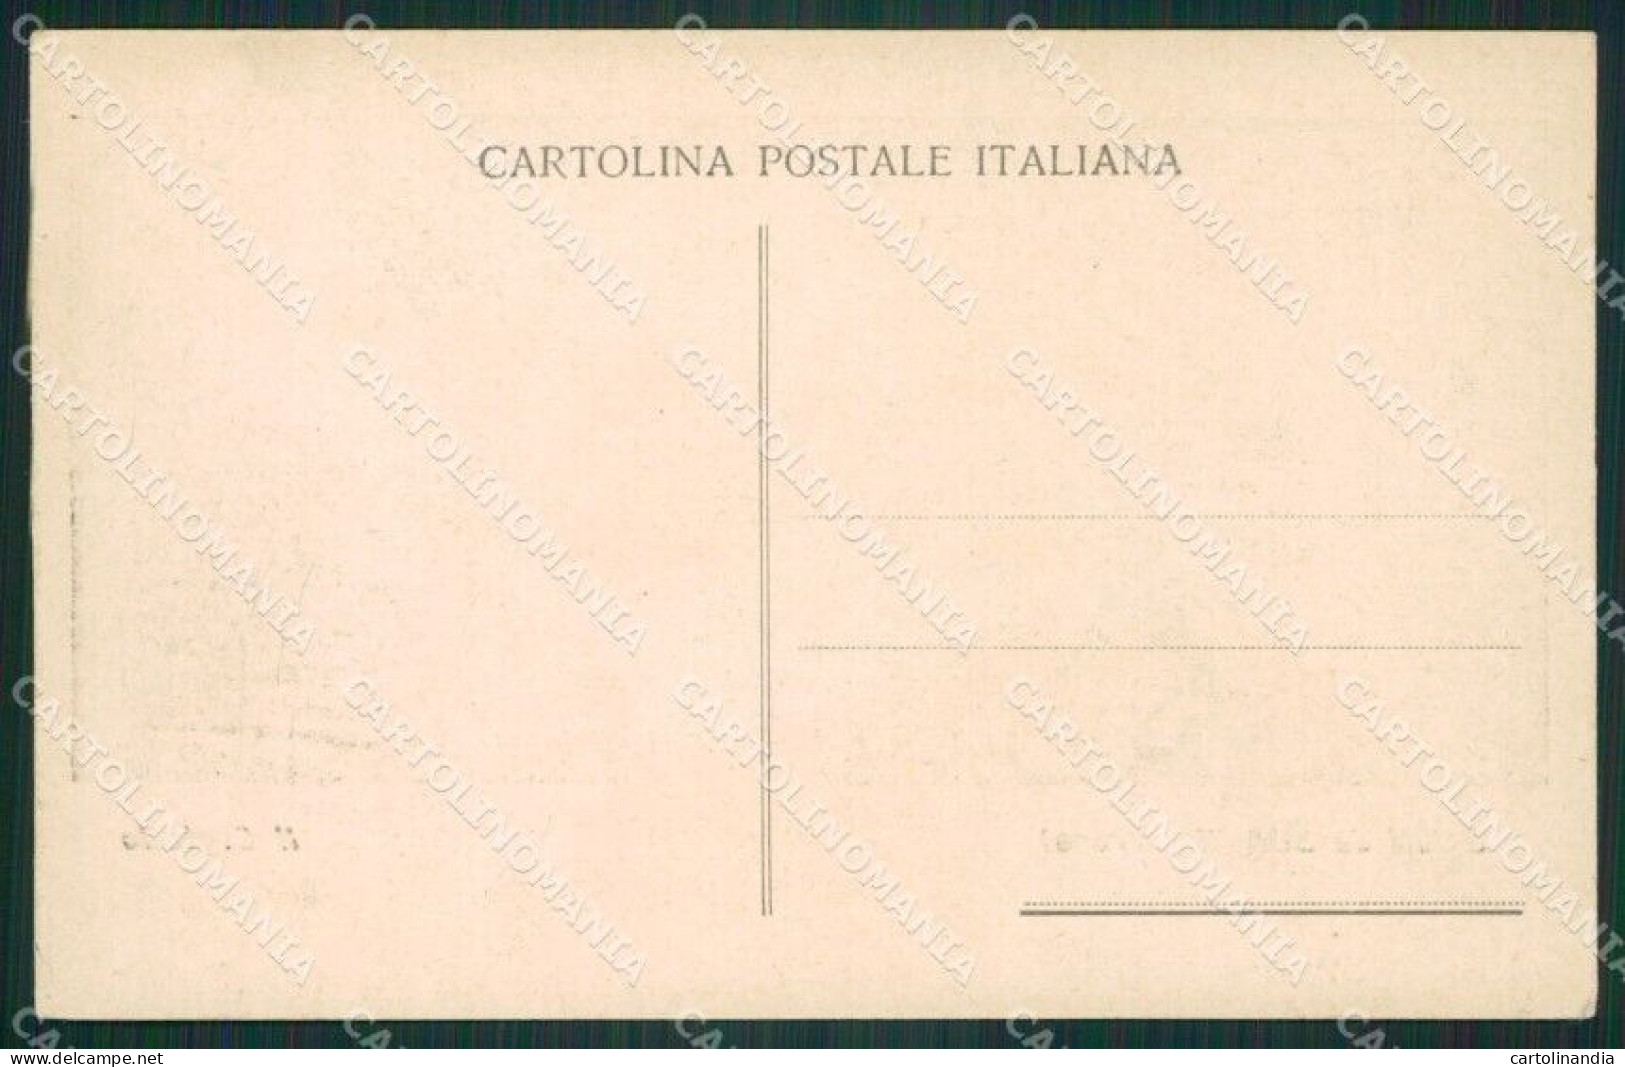 Verona Soave Cartolina ZKM8959 - Verona